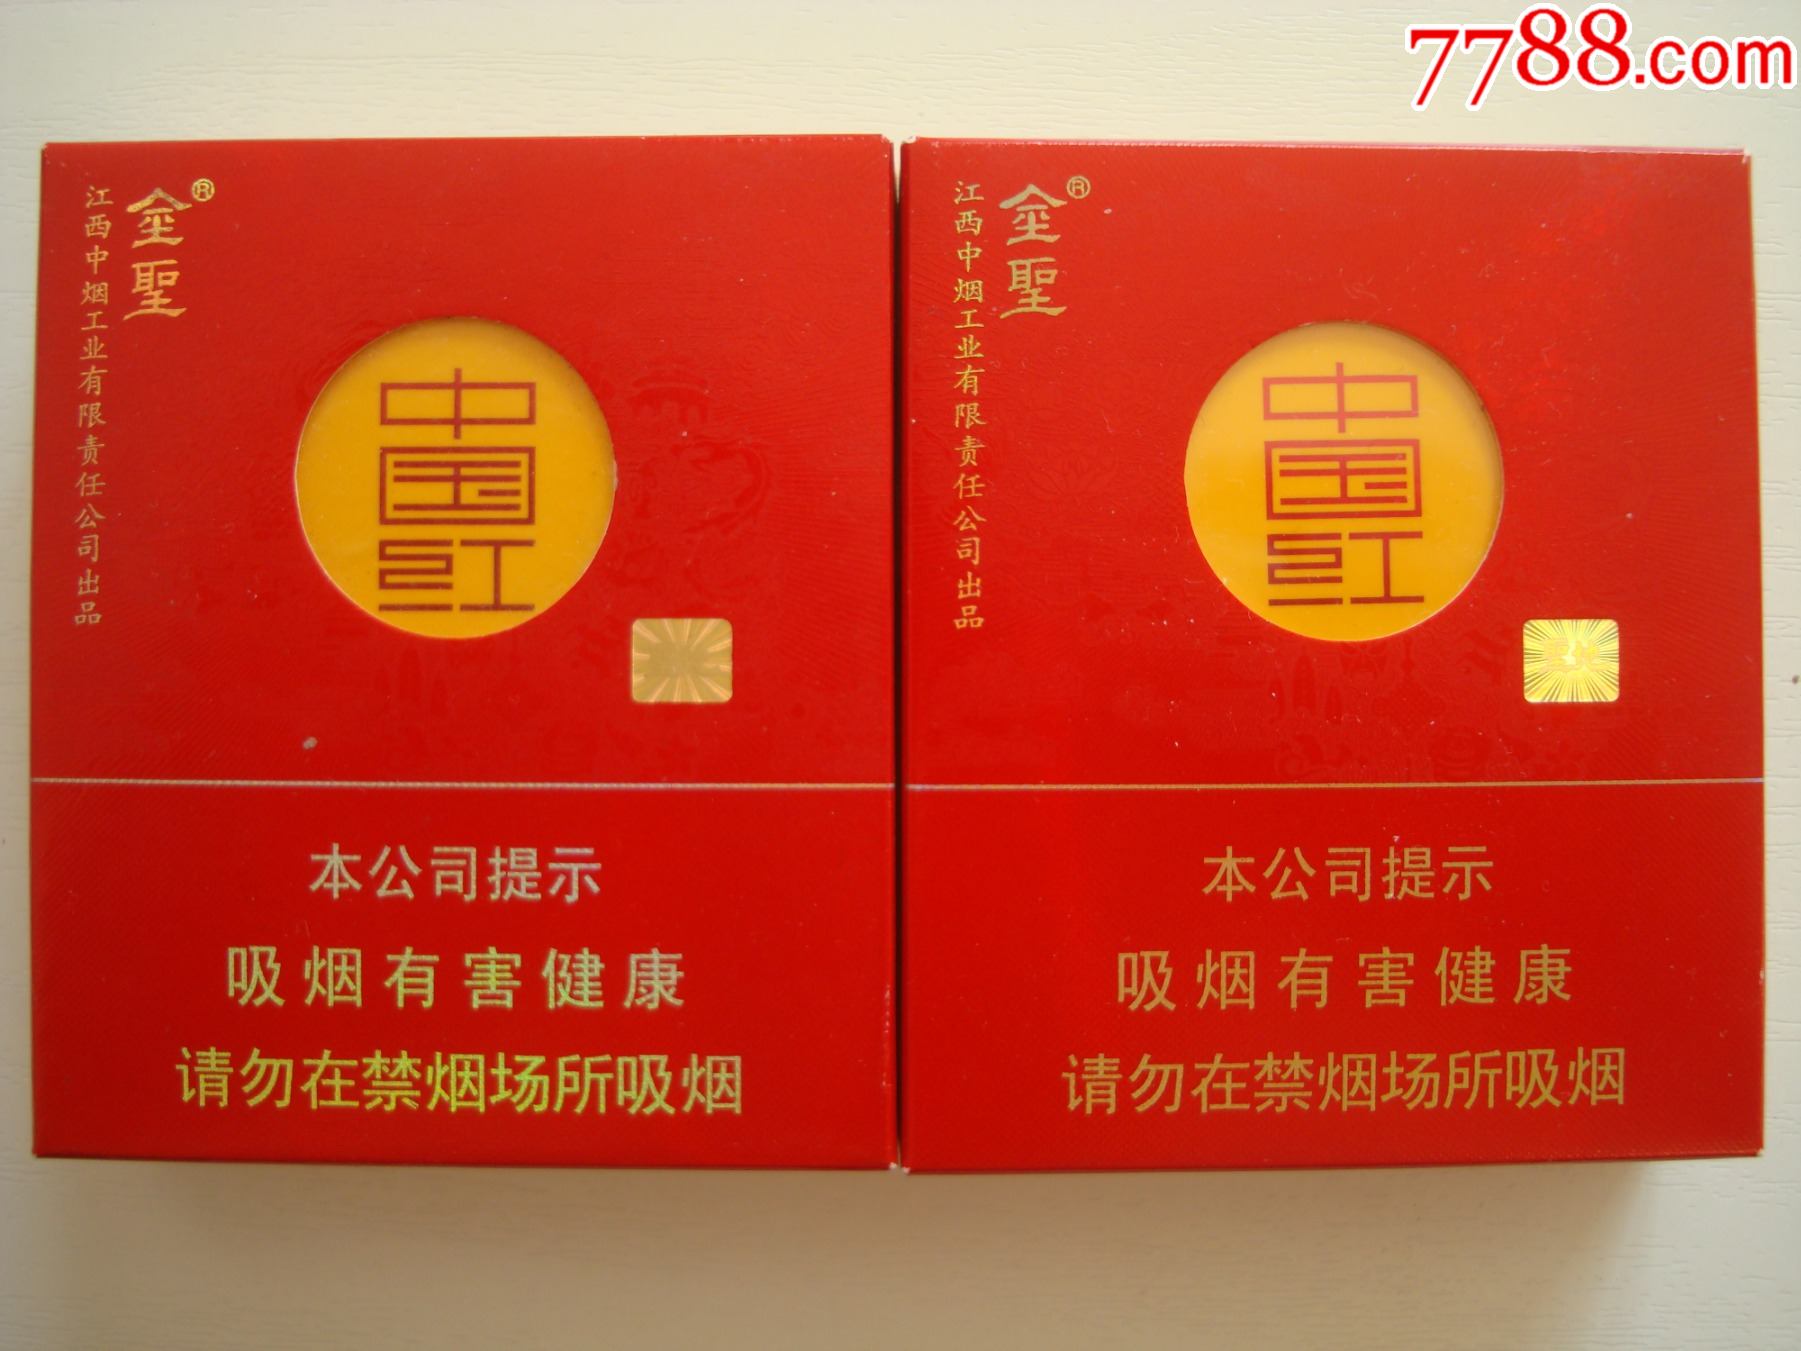 金圣――中国红――16支装两种不同合售